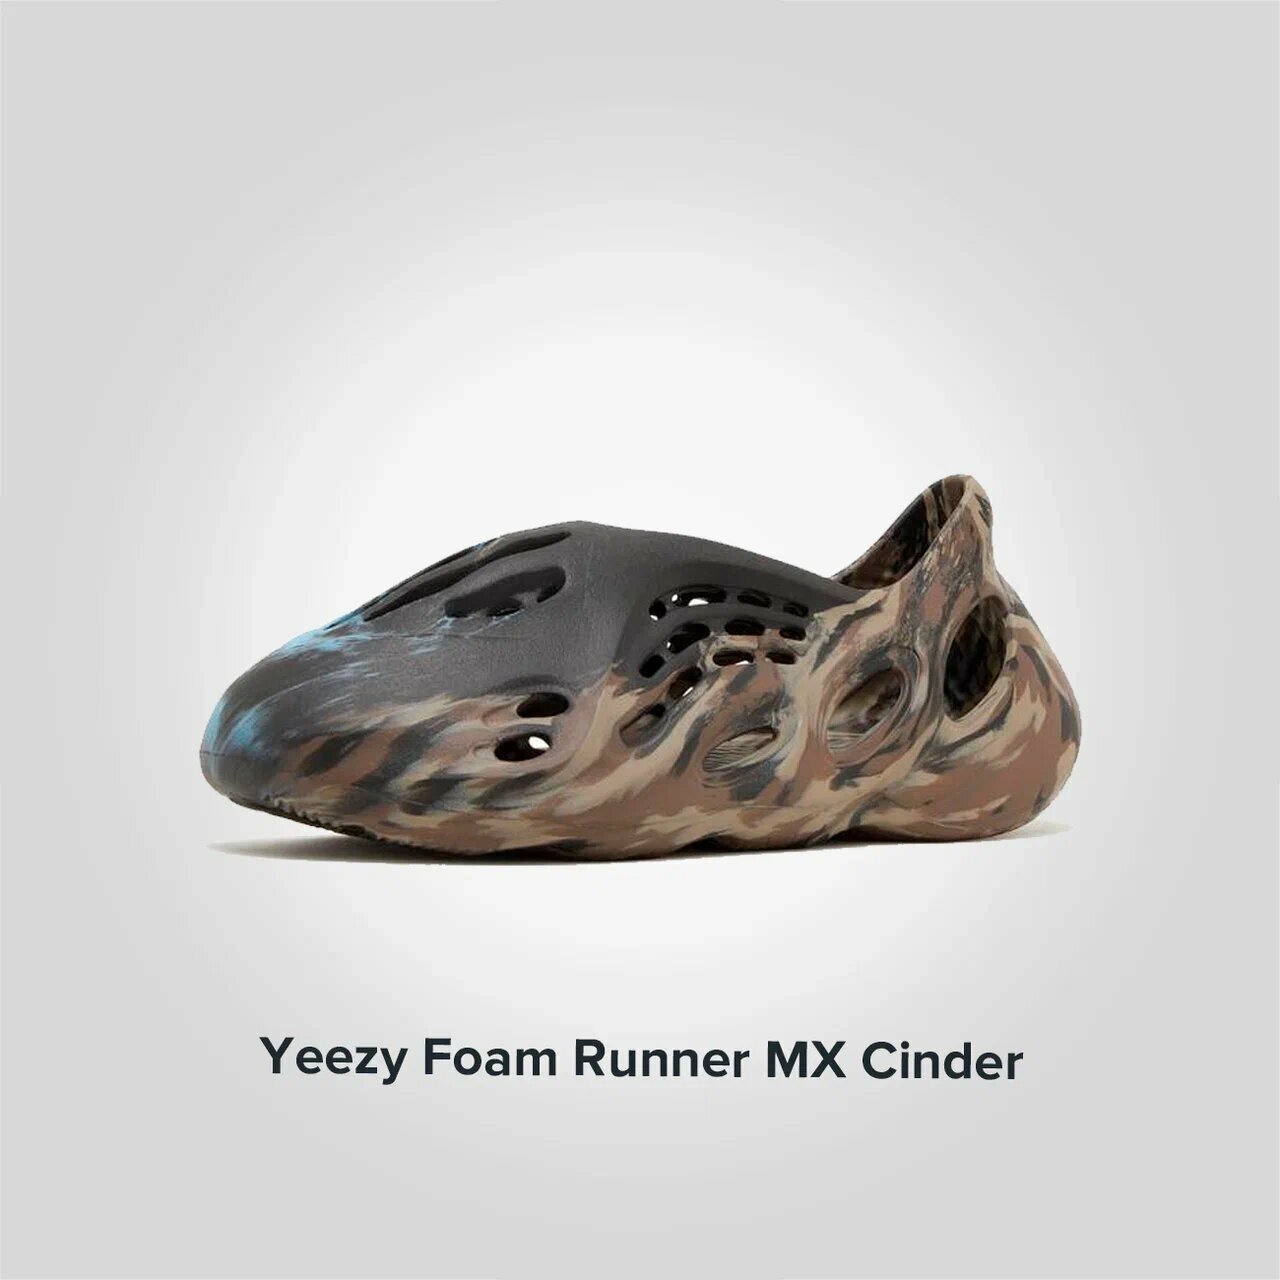 Yeezy Foam Runner MX Cinder